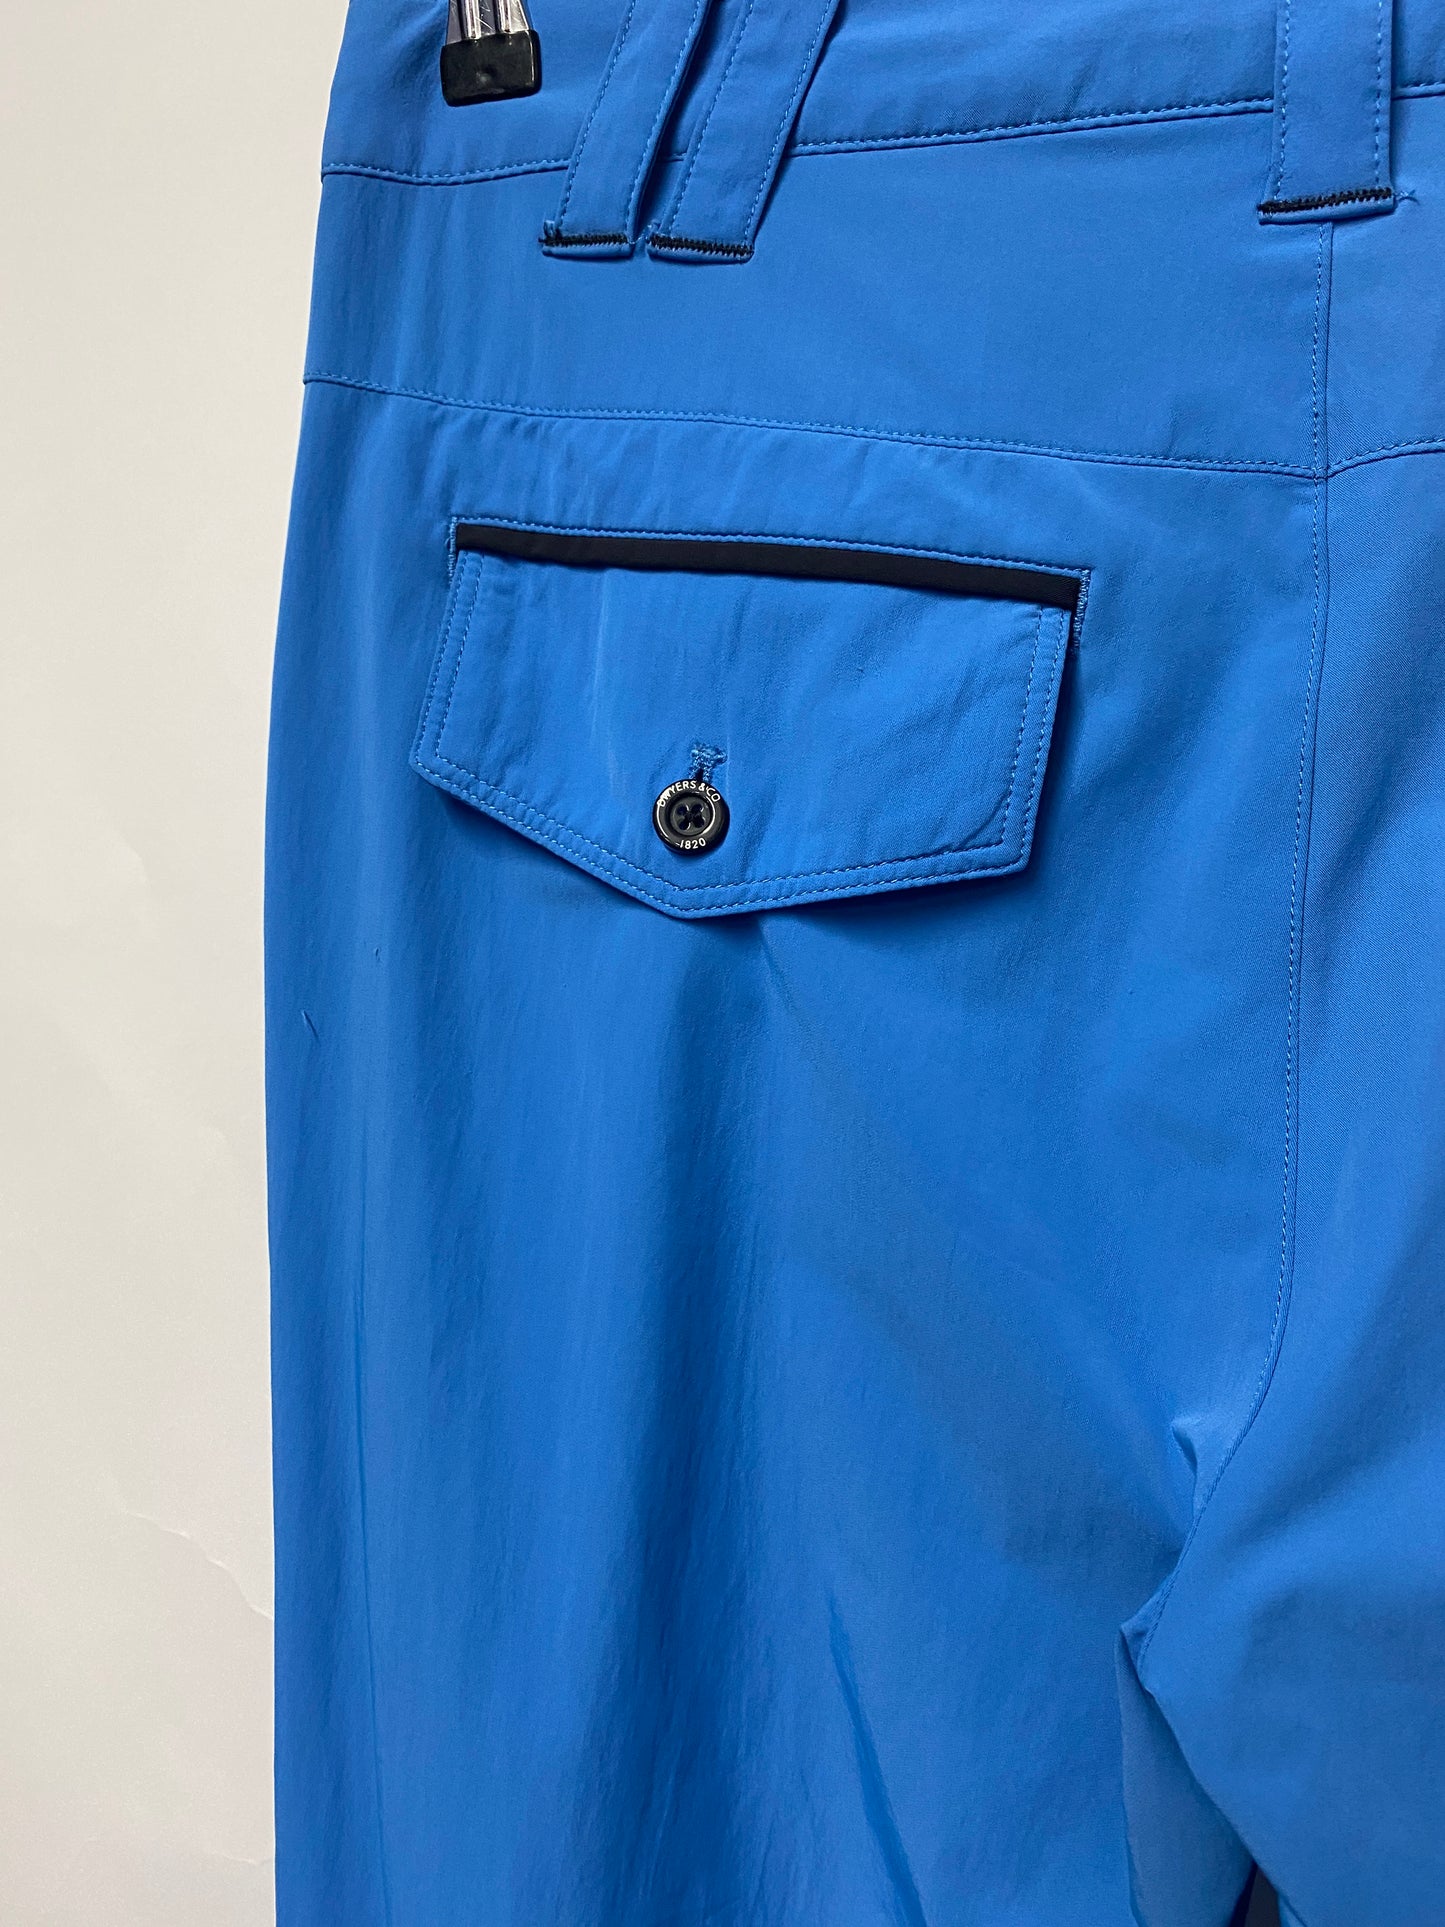 Dwyers & Co Blu Fleece Lined Golf Trousers Large